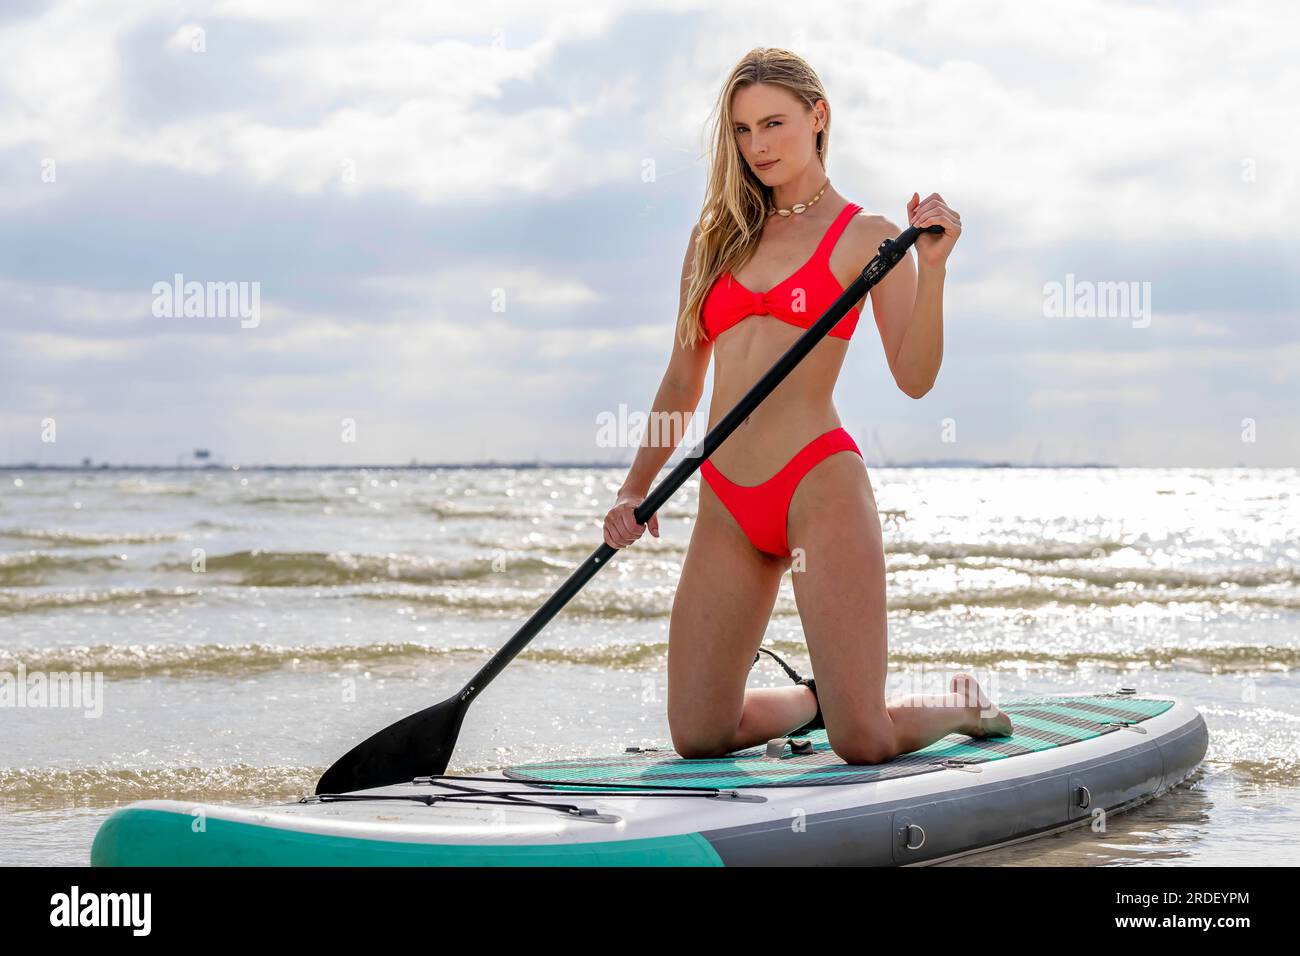 Un beau modèle blond profite d'une journée d'été tout en se préparant à surfer sur l'océan avec son paddle board Banque D'Images